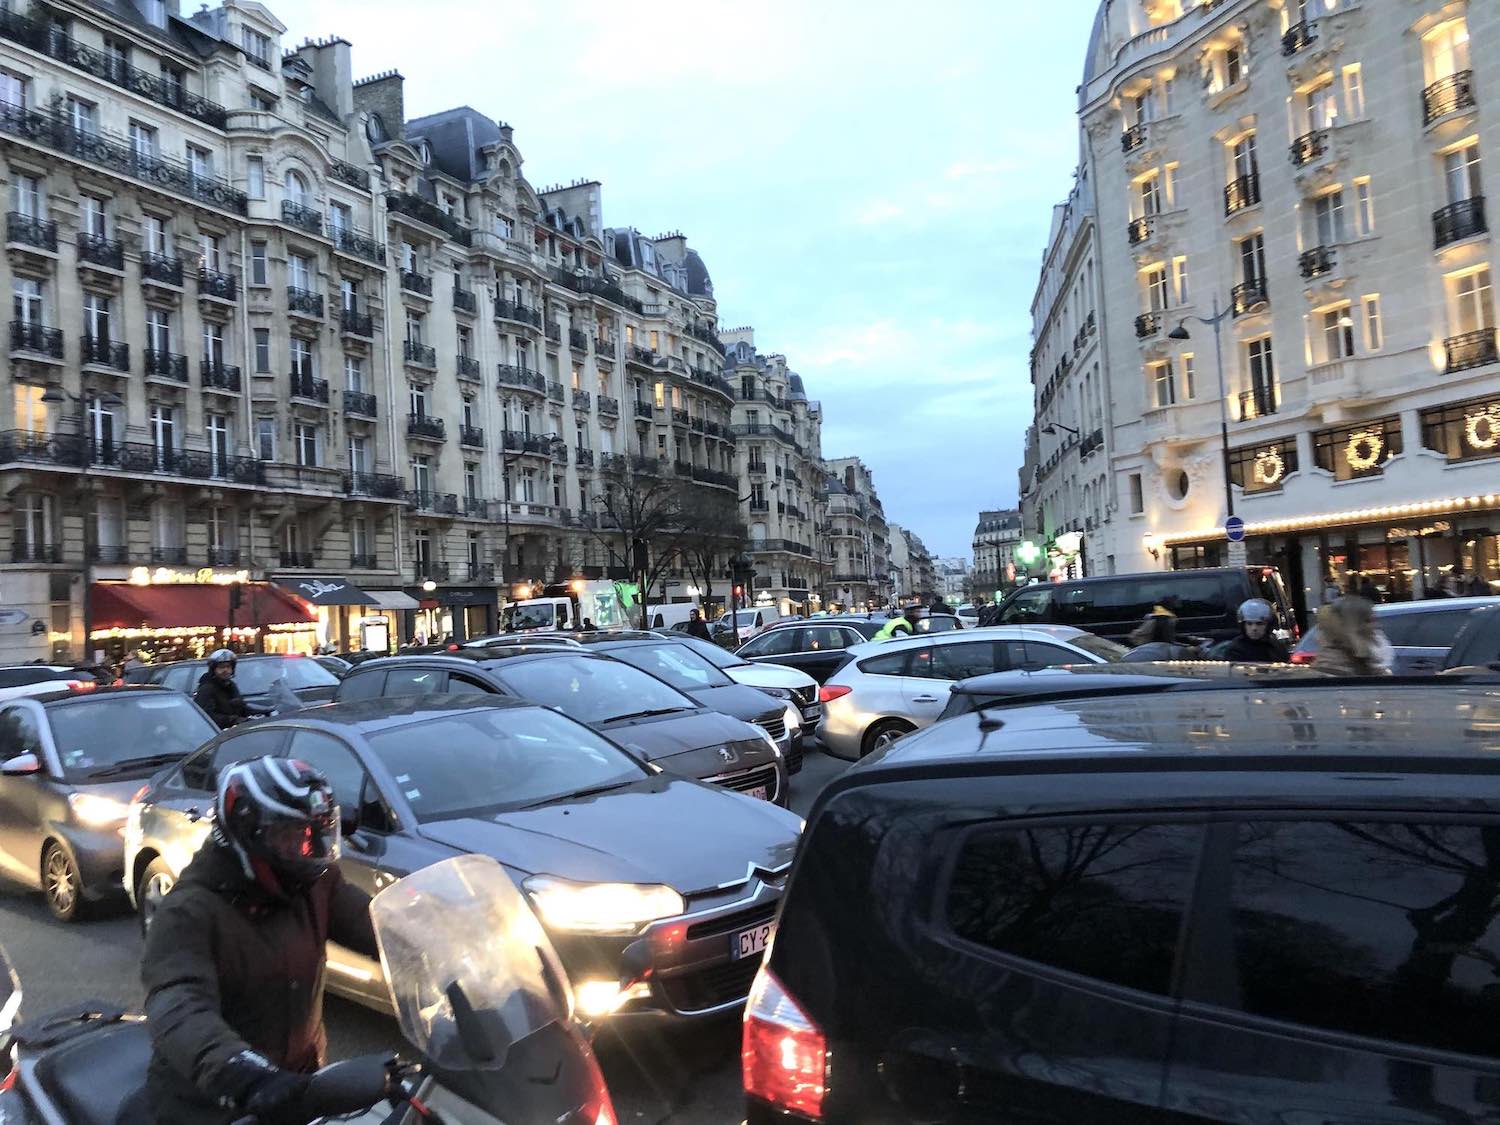 Traffic in paris